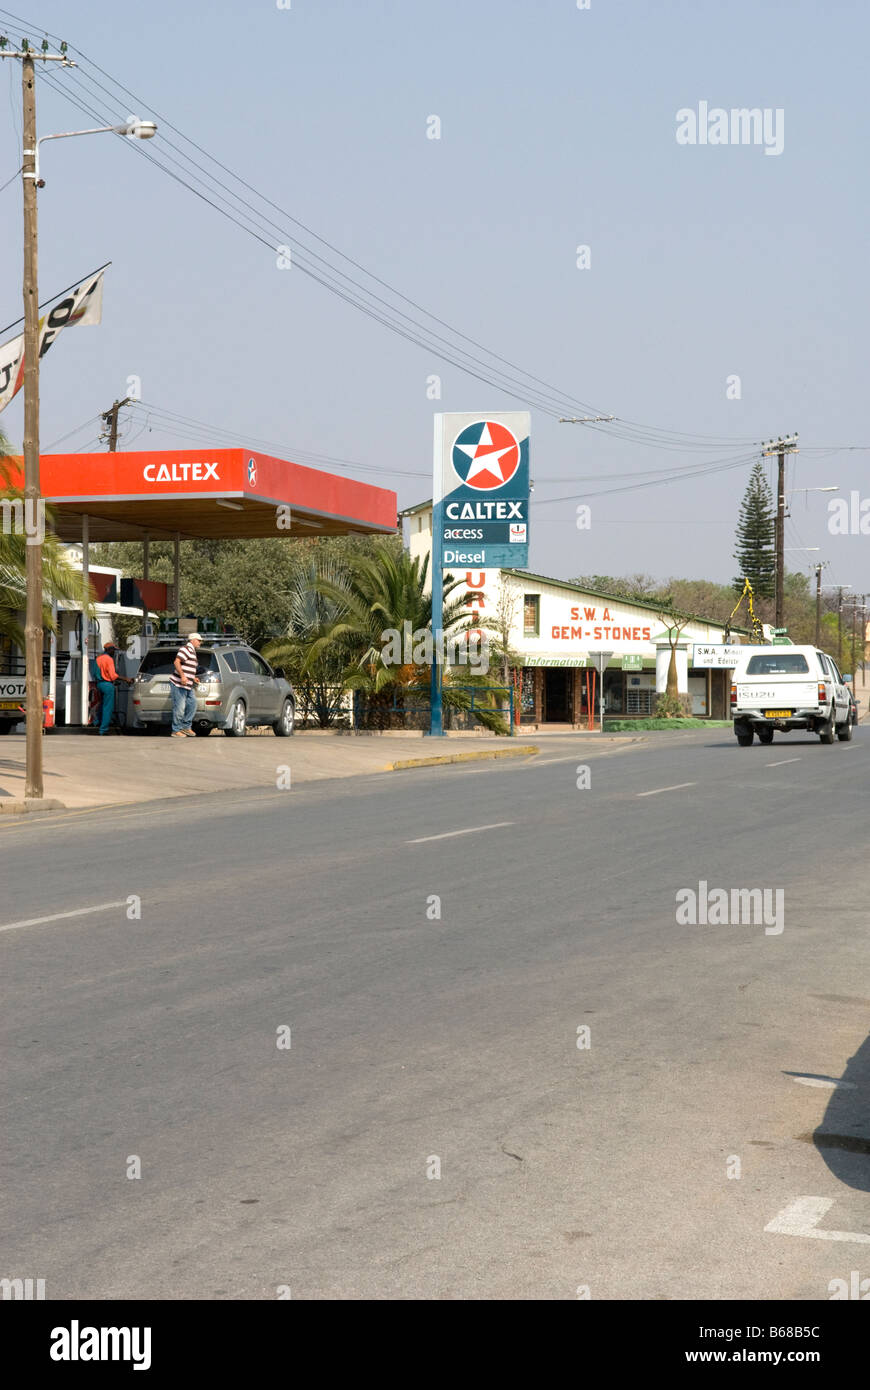 Outjo town, Namibia Stock Photo